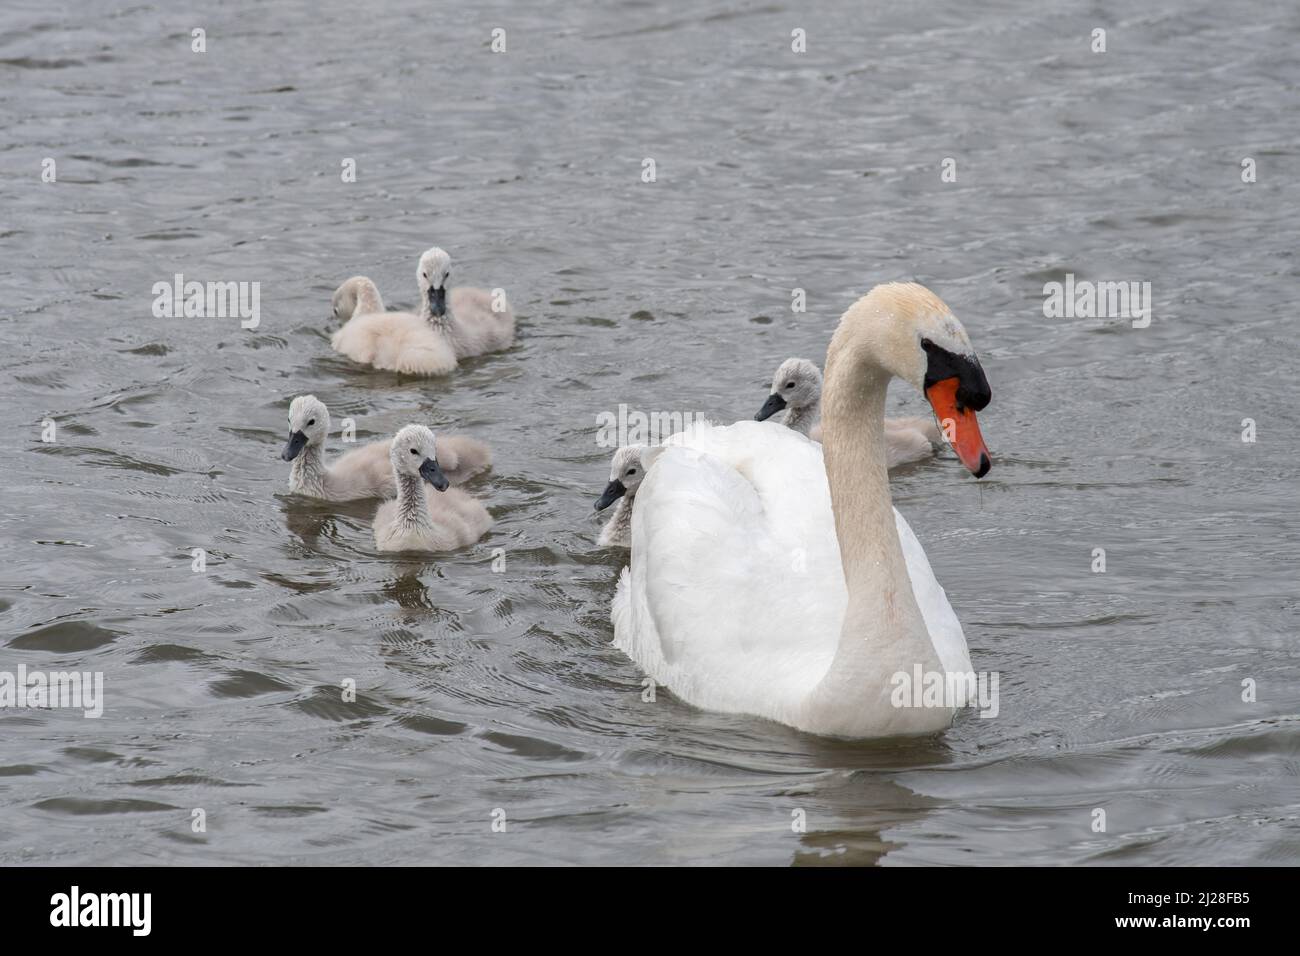 Cygne avec des bébés (cygnets) nageant dans un lac. Banque D'Images